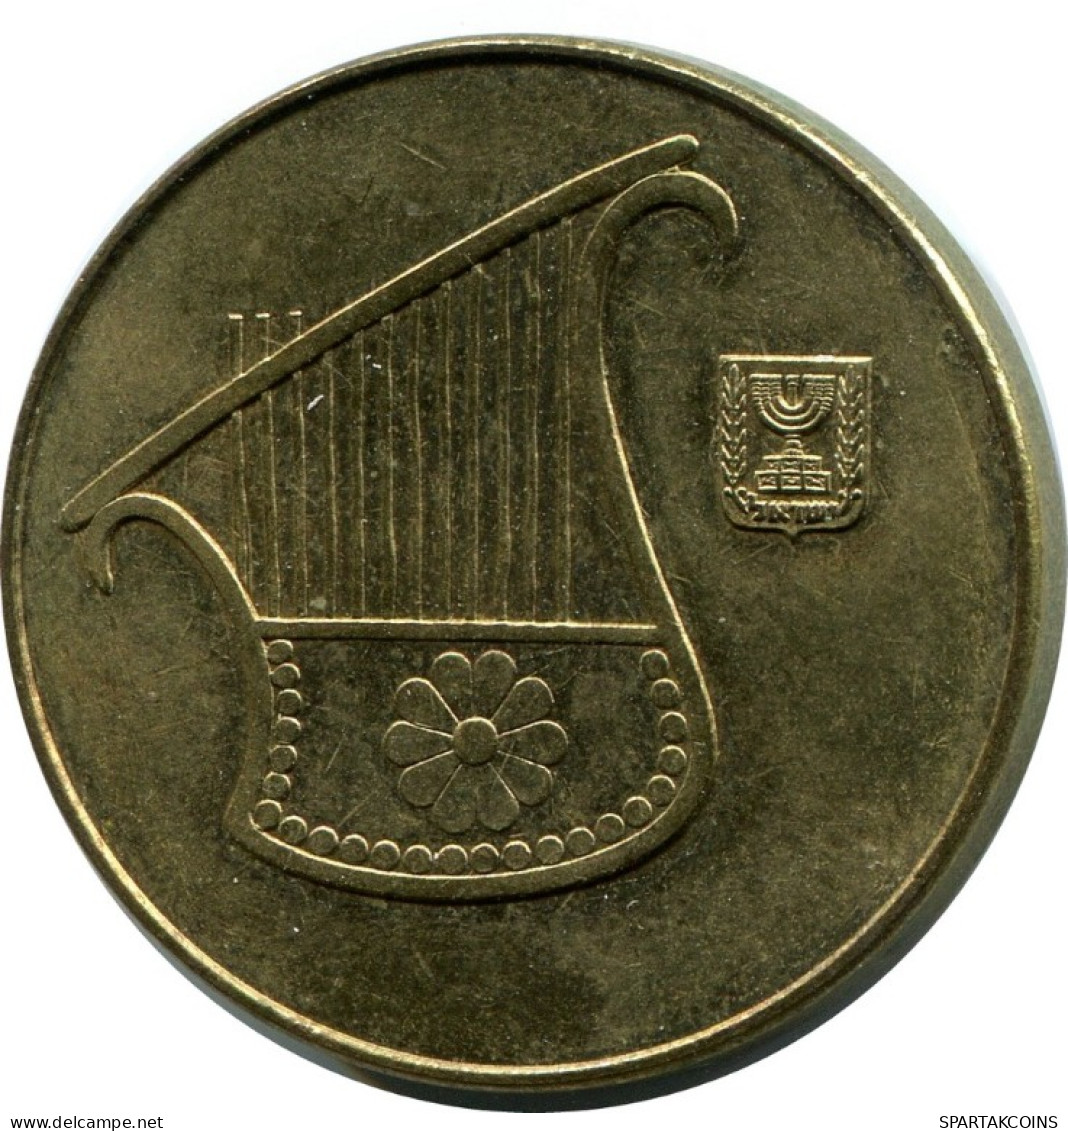 1/2 NEW SHEQEL 1985 ISRAEL Coin #AH939.U.A - Israele